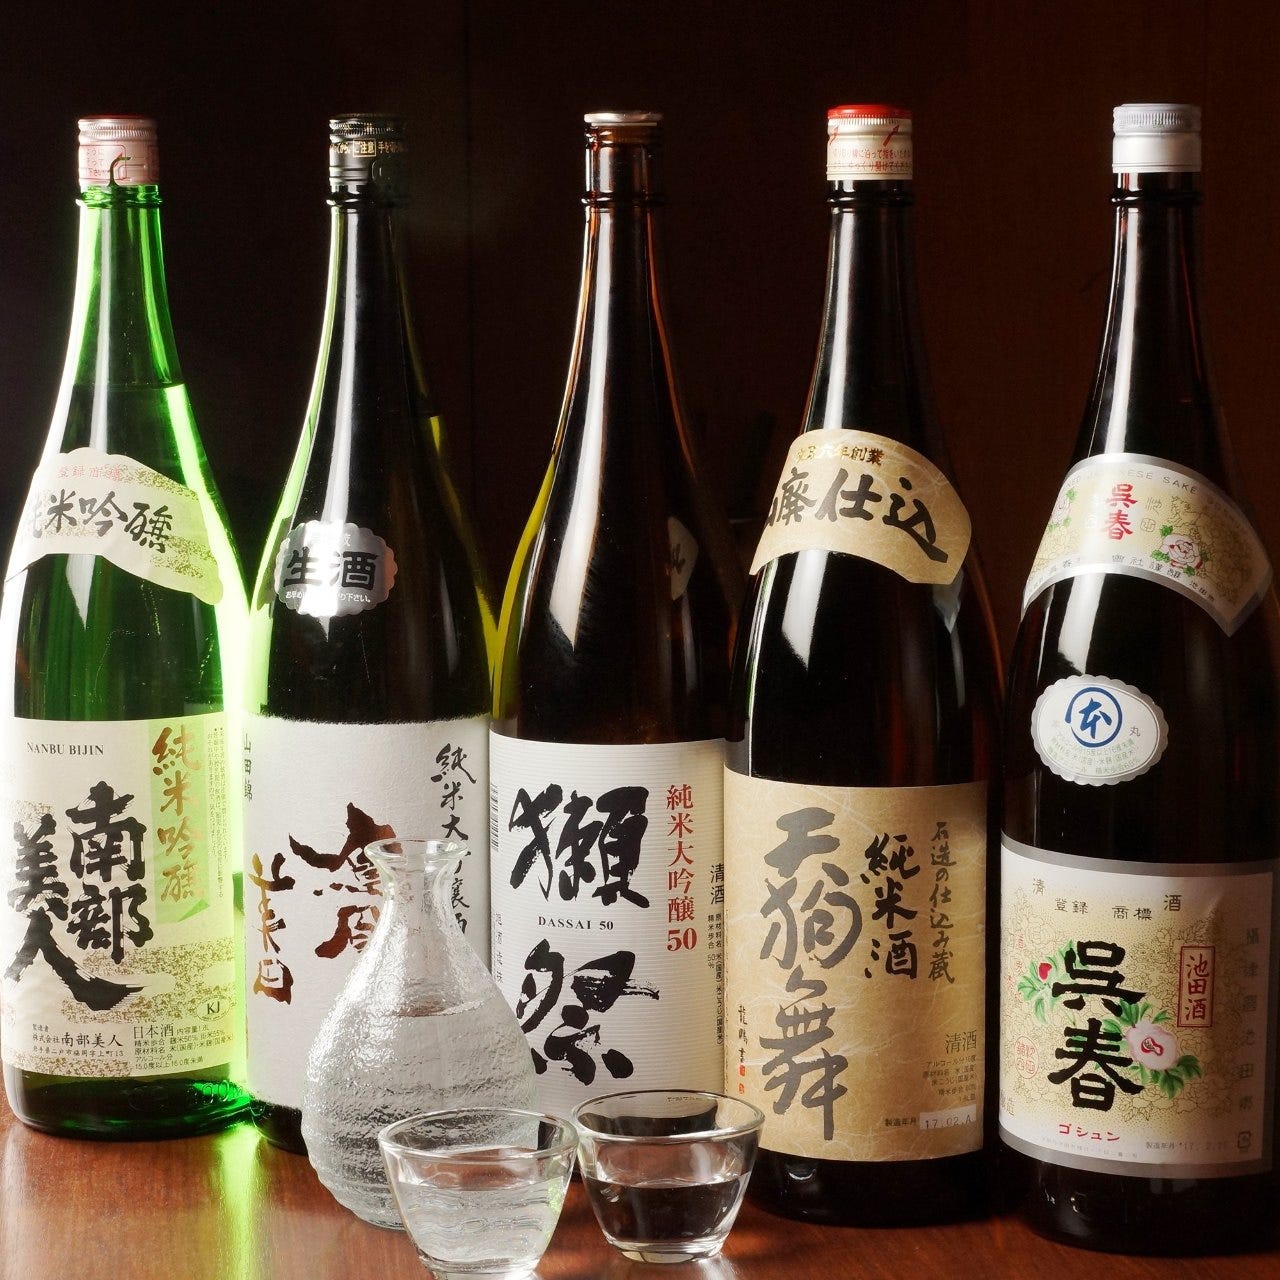 【日本酒各種】
全国各地のお酒を全11種ご用意！